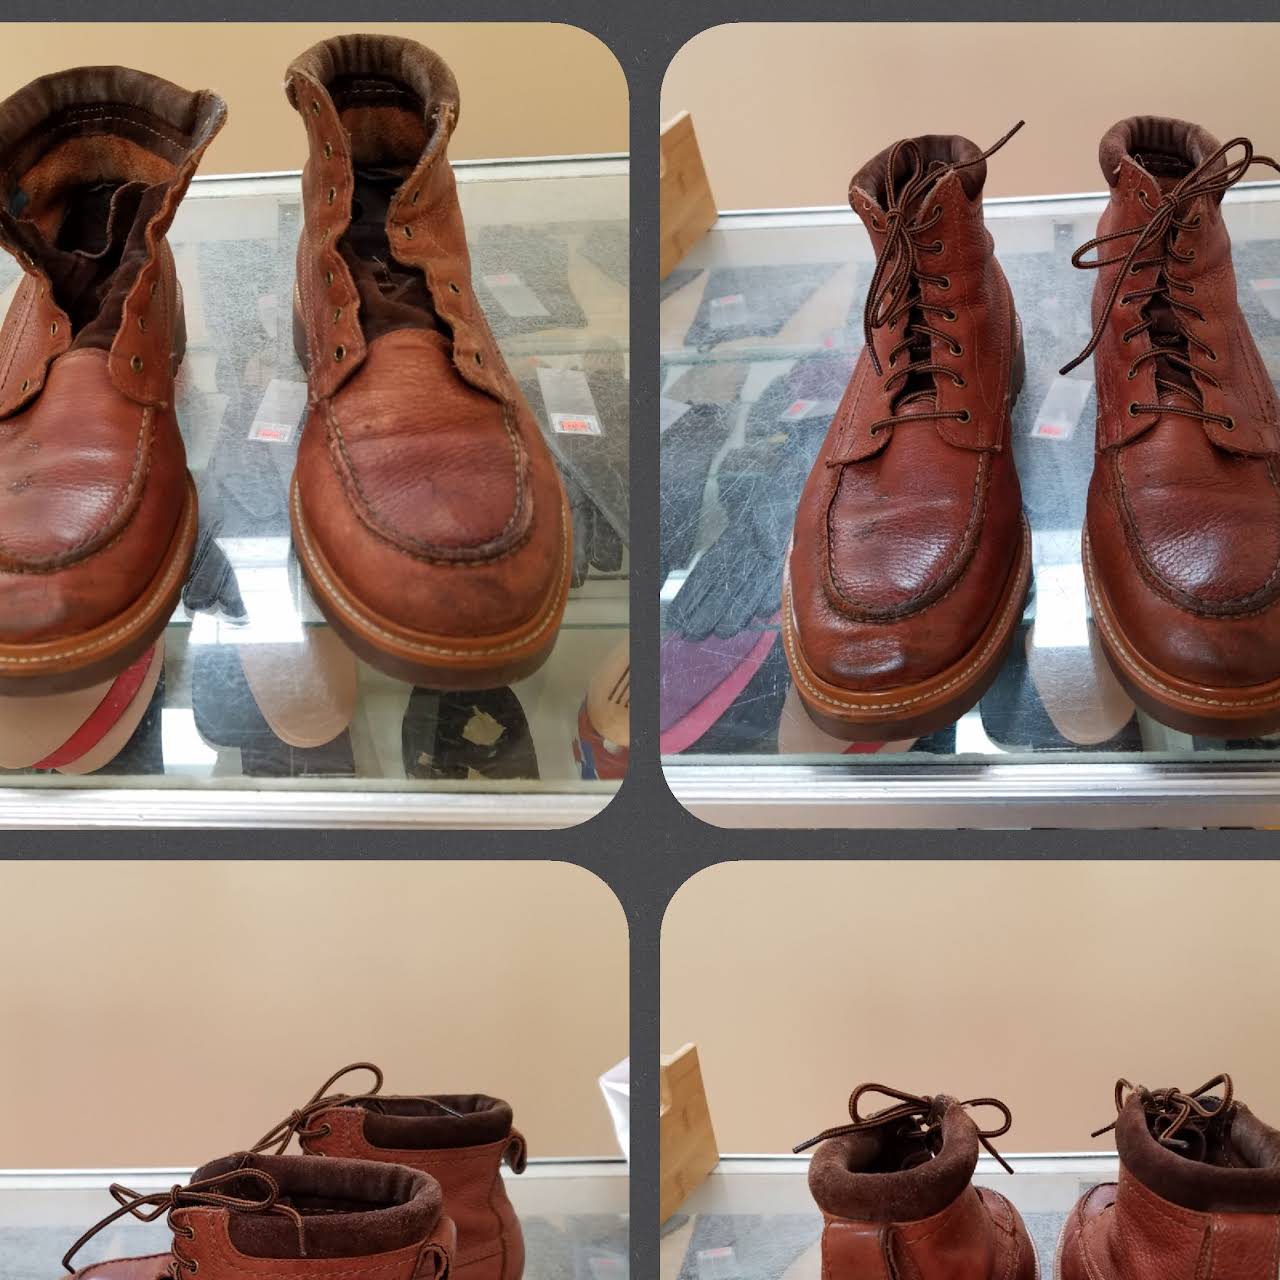 Yucaipa Bag & Shoe Repair – We Repair Shoes, Boots, Bags, Luggage